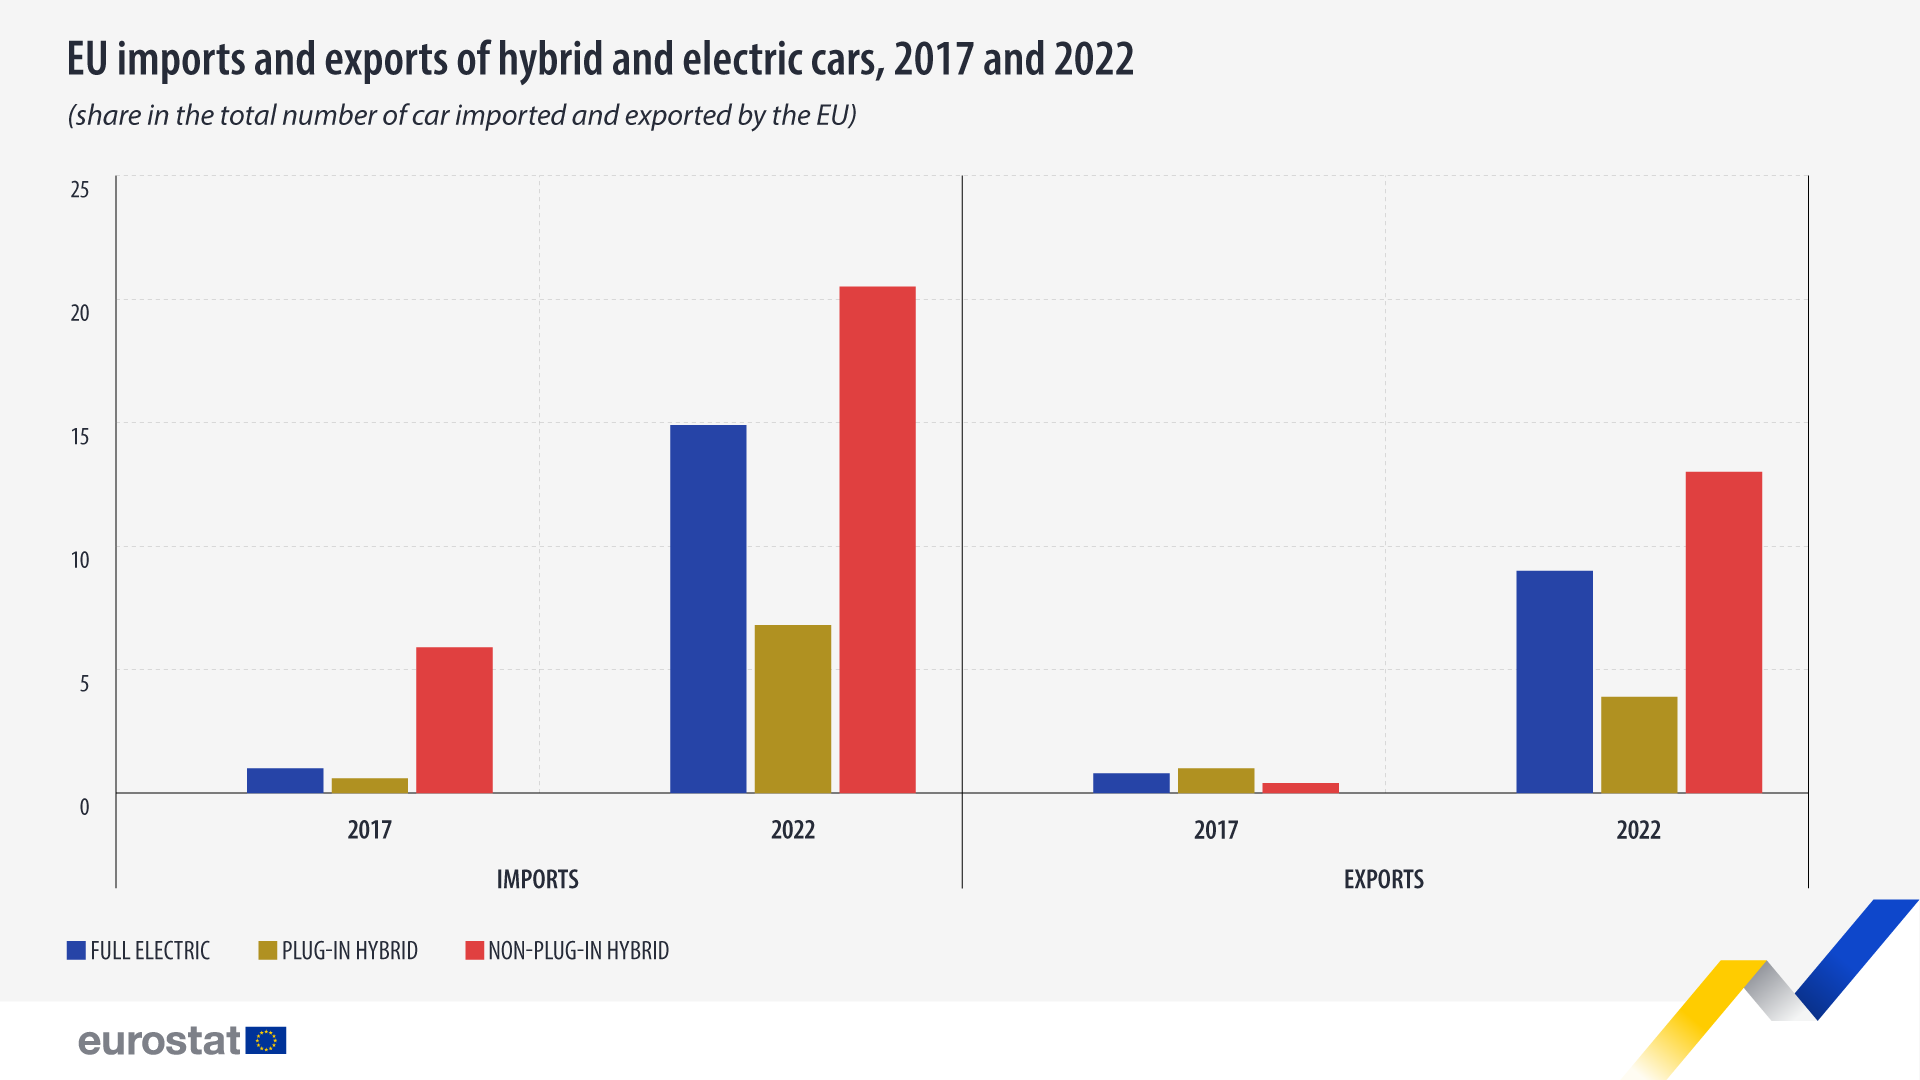 Գծապատկեր. ԵՄ հիբրիդային և էլեկտրական մեքենաների ներմուծումն ու արտահանումը, 2017 և 2022 թվականներին, մասնաբաժինը ԵՄ կողմից ներմուծված և արտահանվող ավտոմեքենաների ընդհանուր քանակում